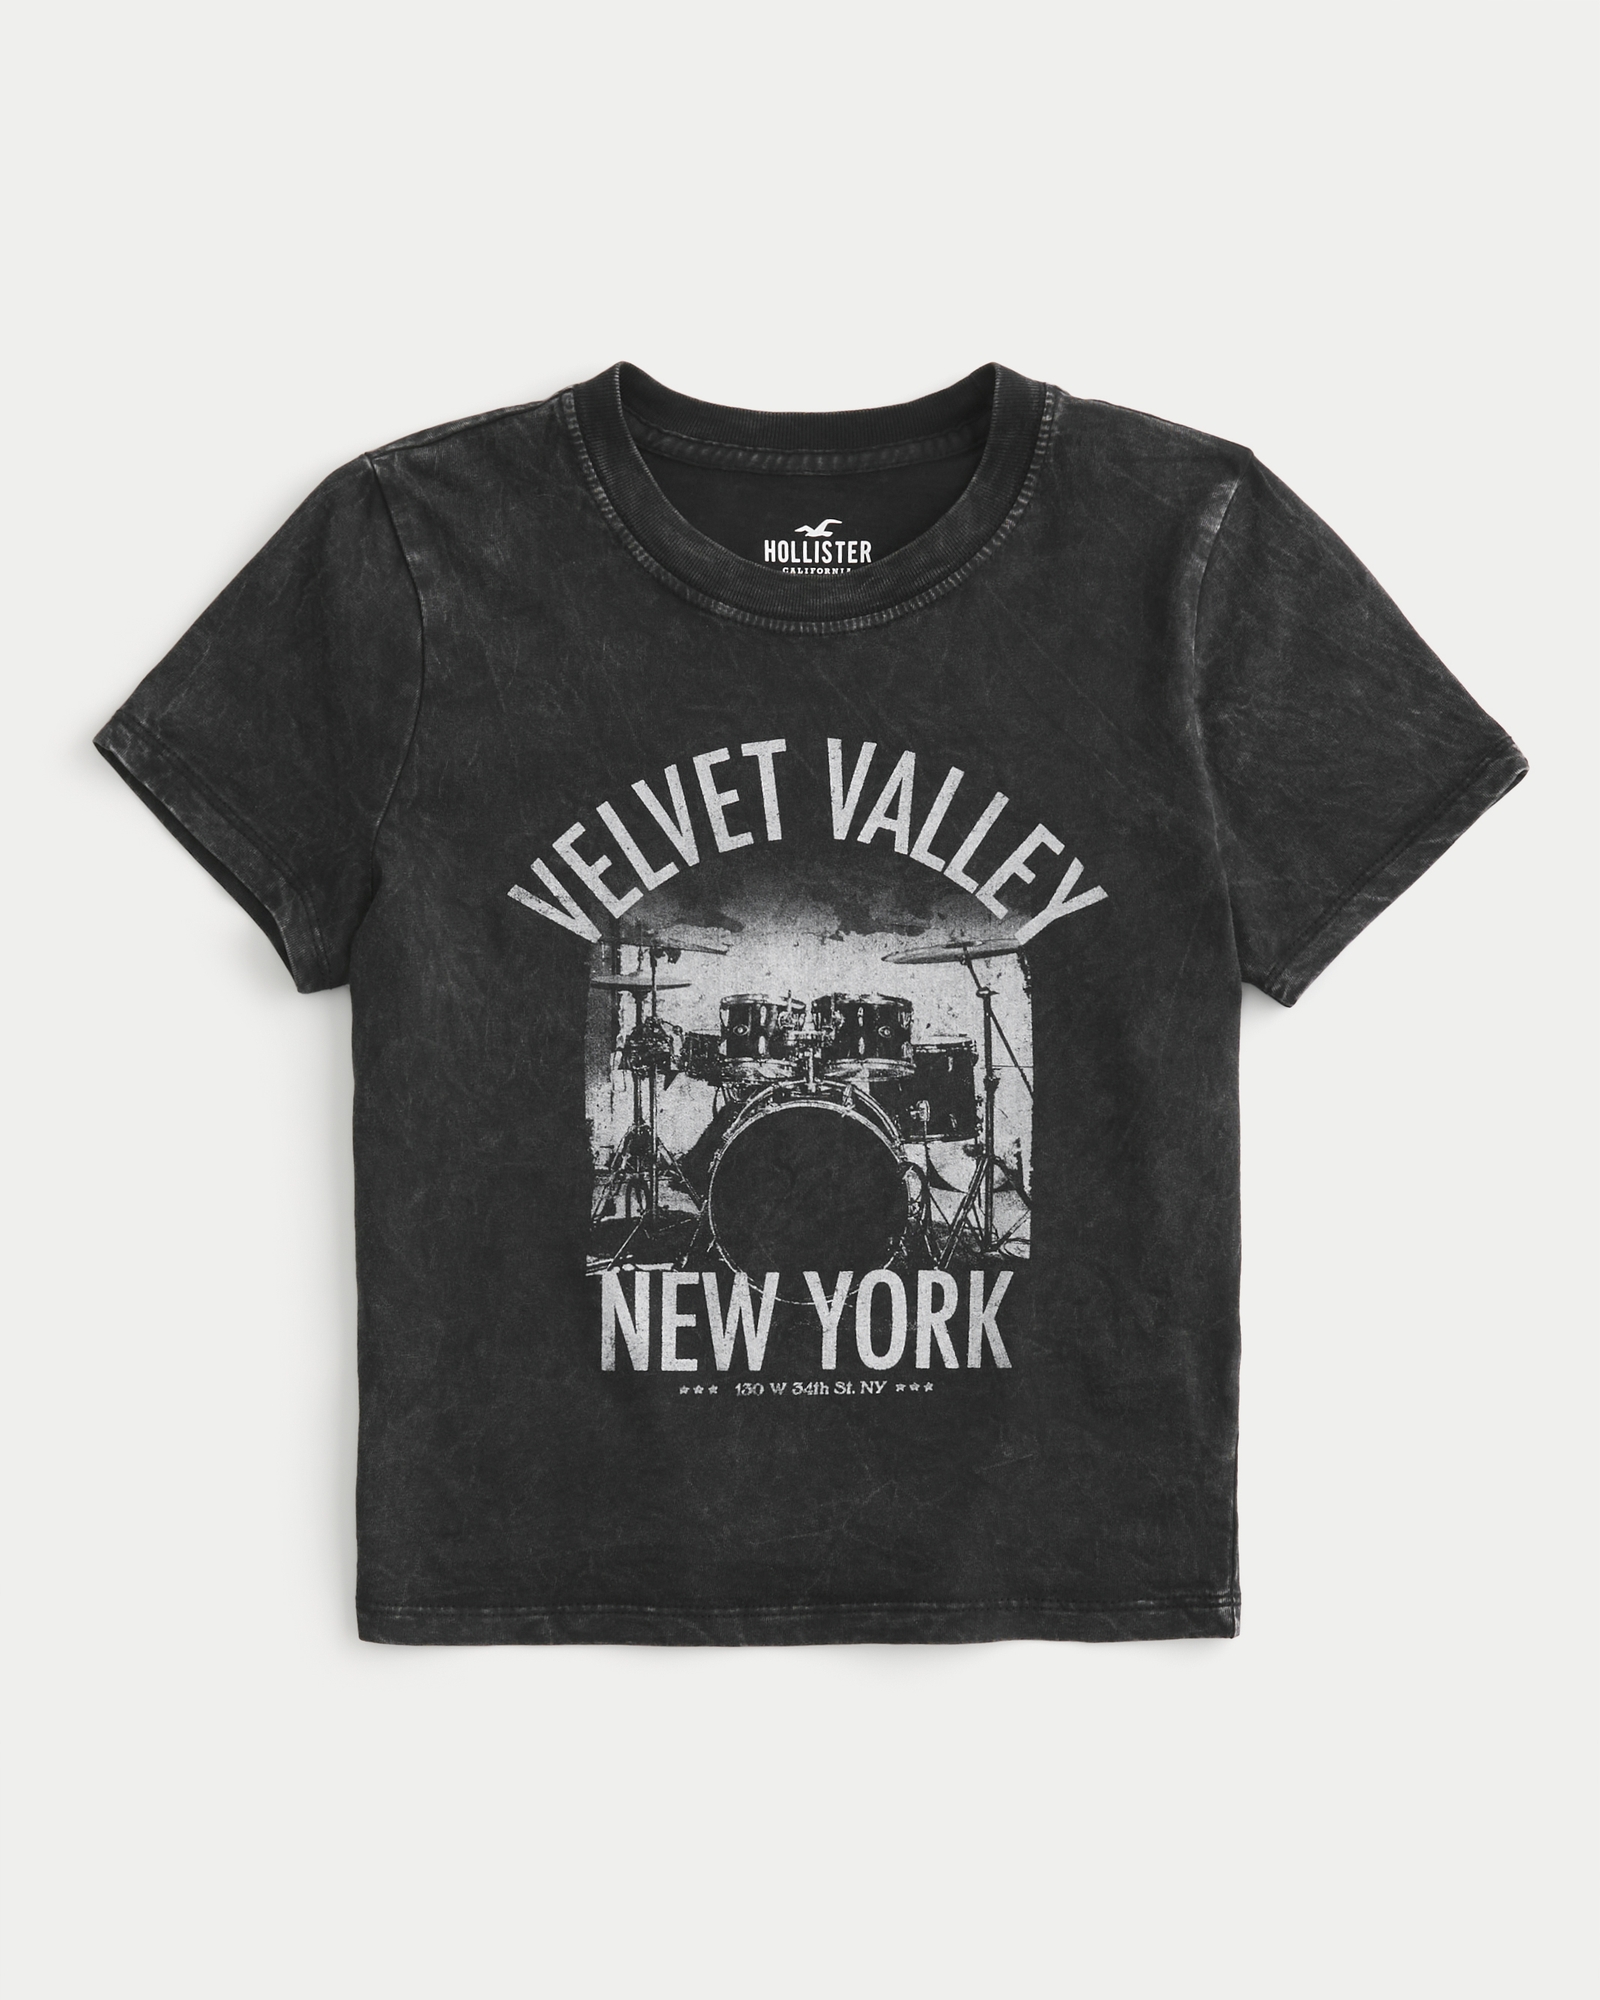 Women's Velvet Valley New York Graphic Baby Tee, Women's Tops